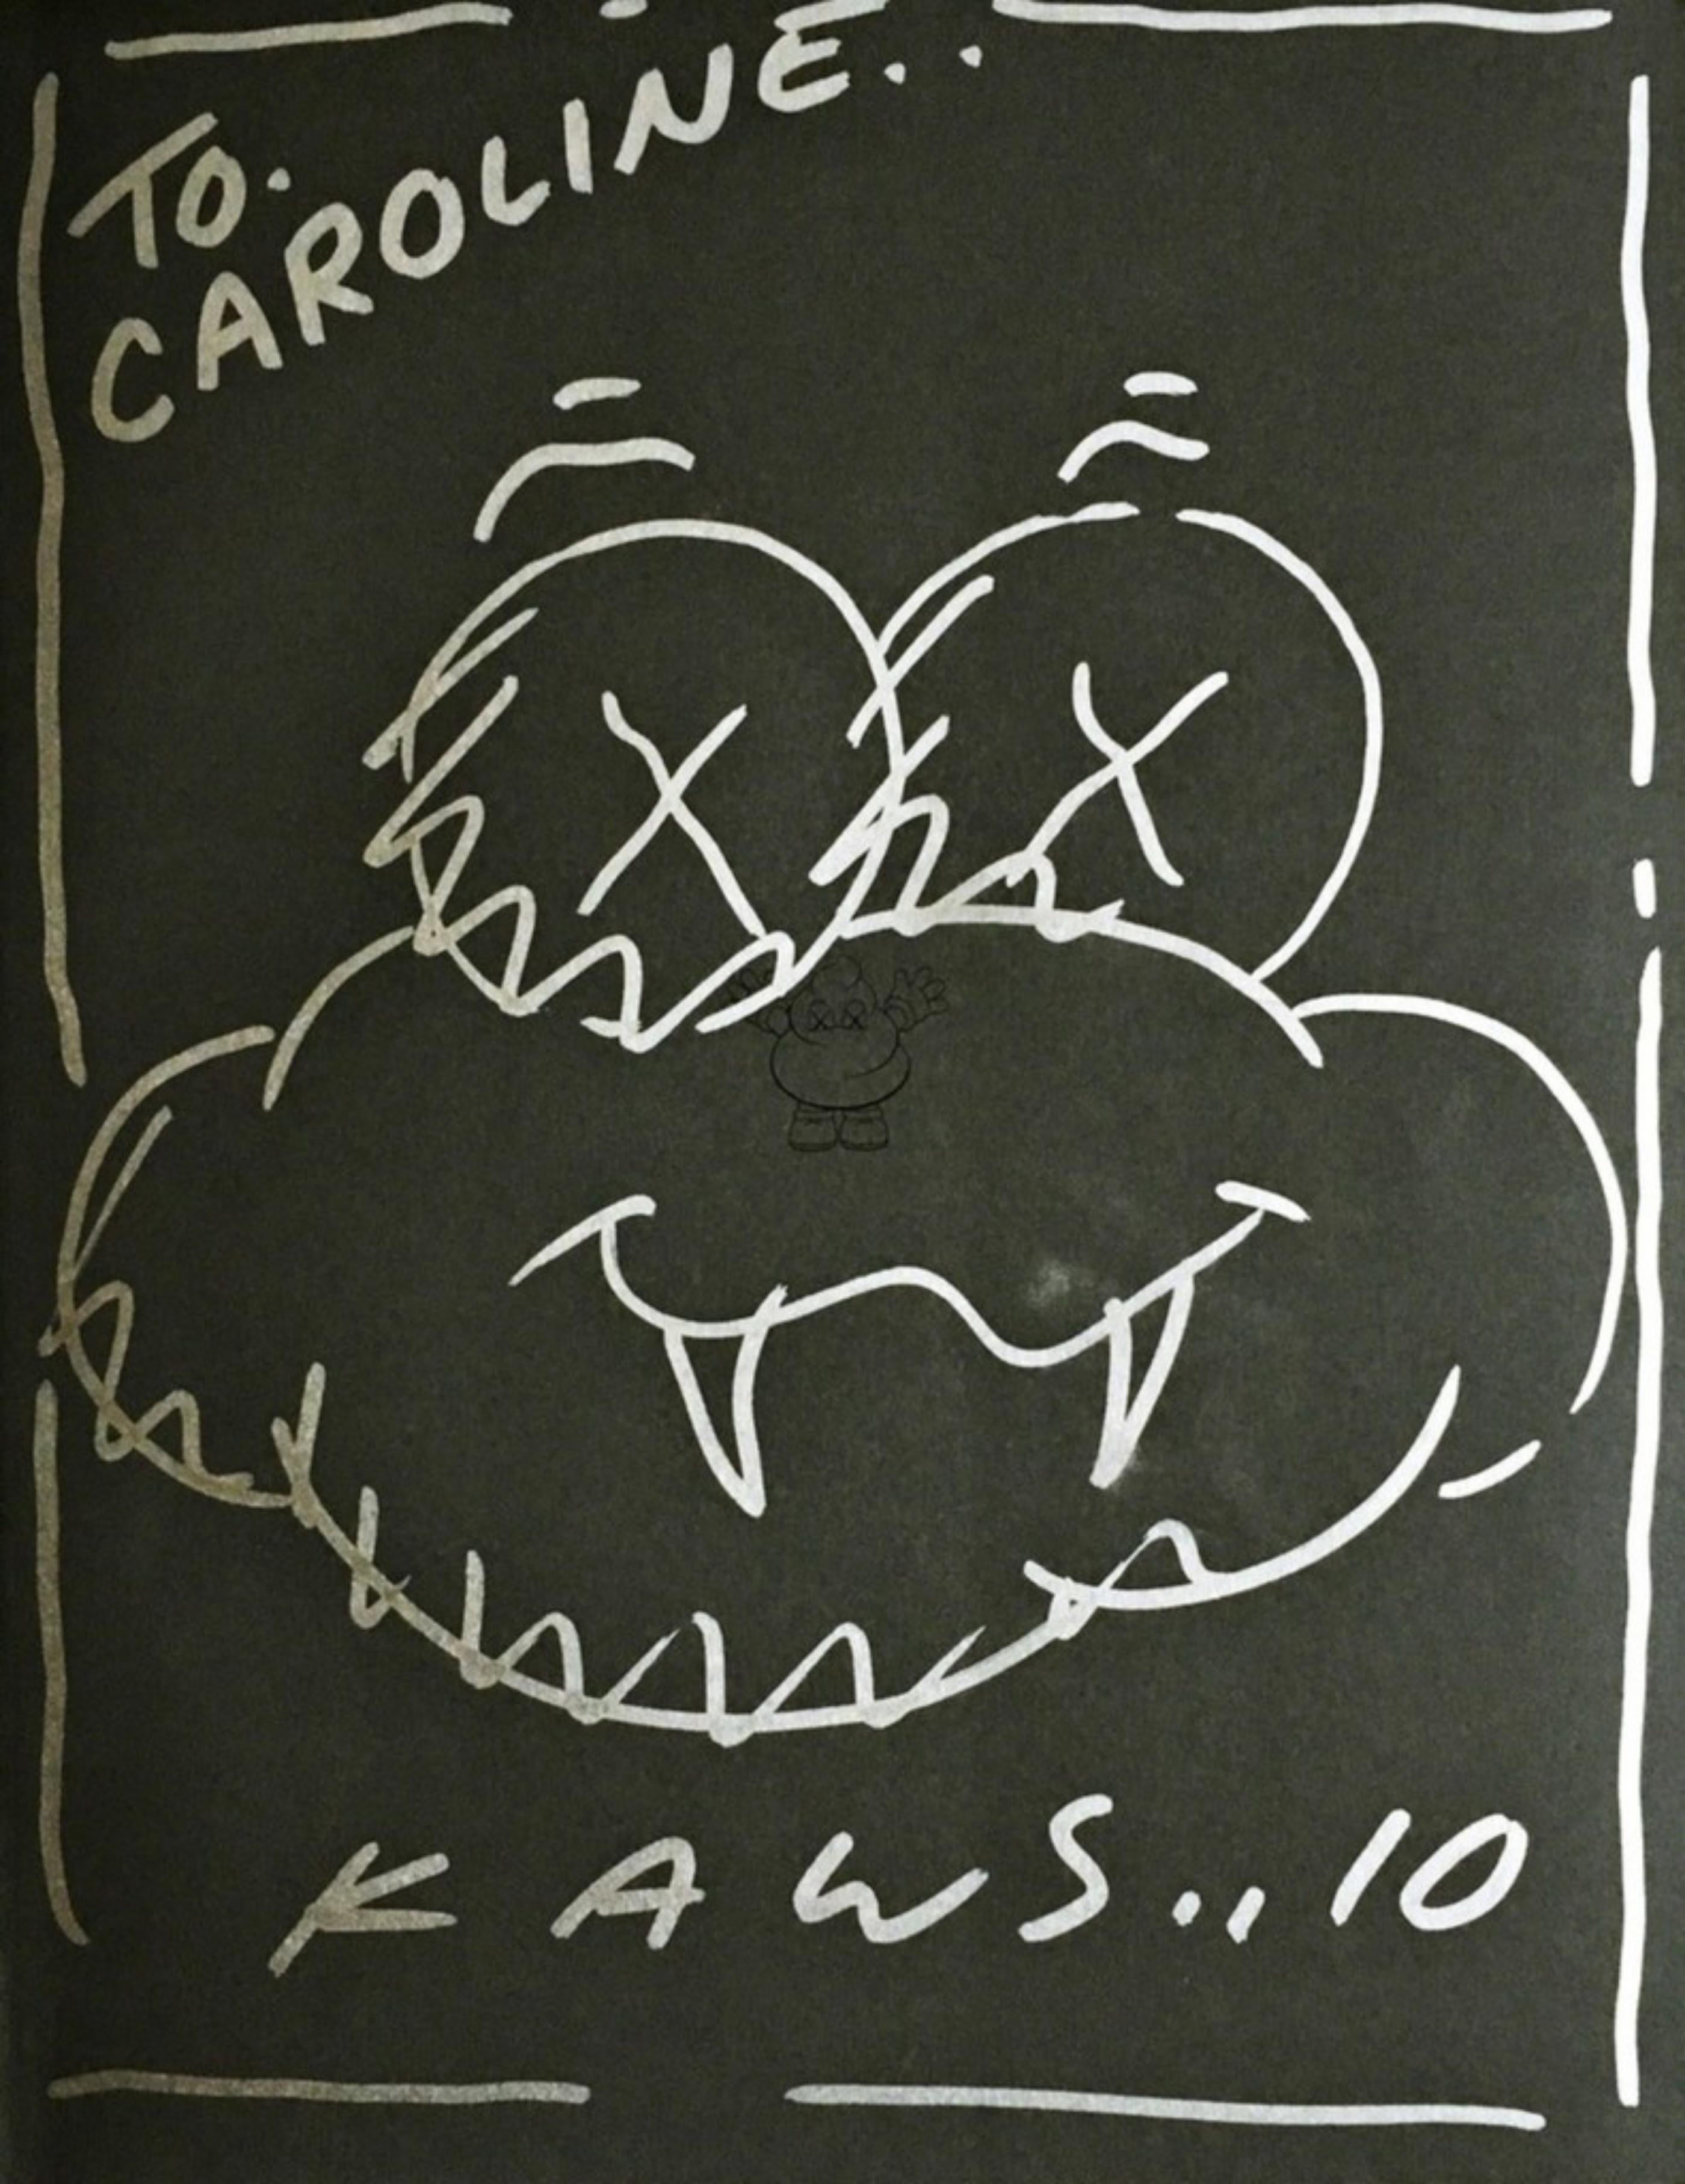 Dessin de nuages unique, signé, daté et inscrit à Caroline, dans sa monographie